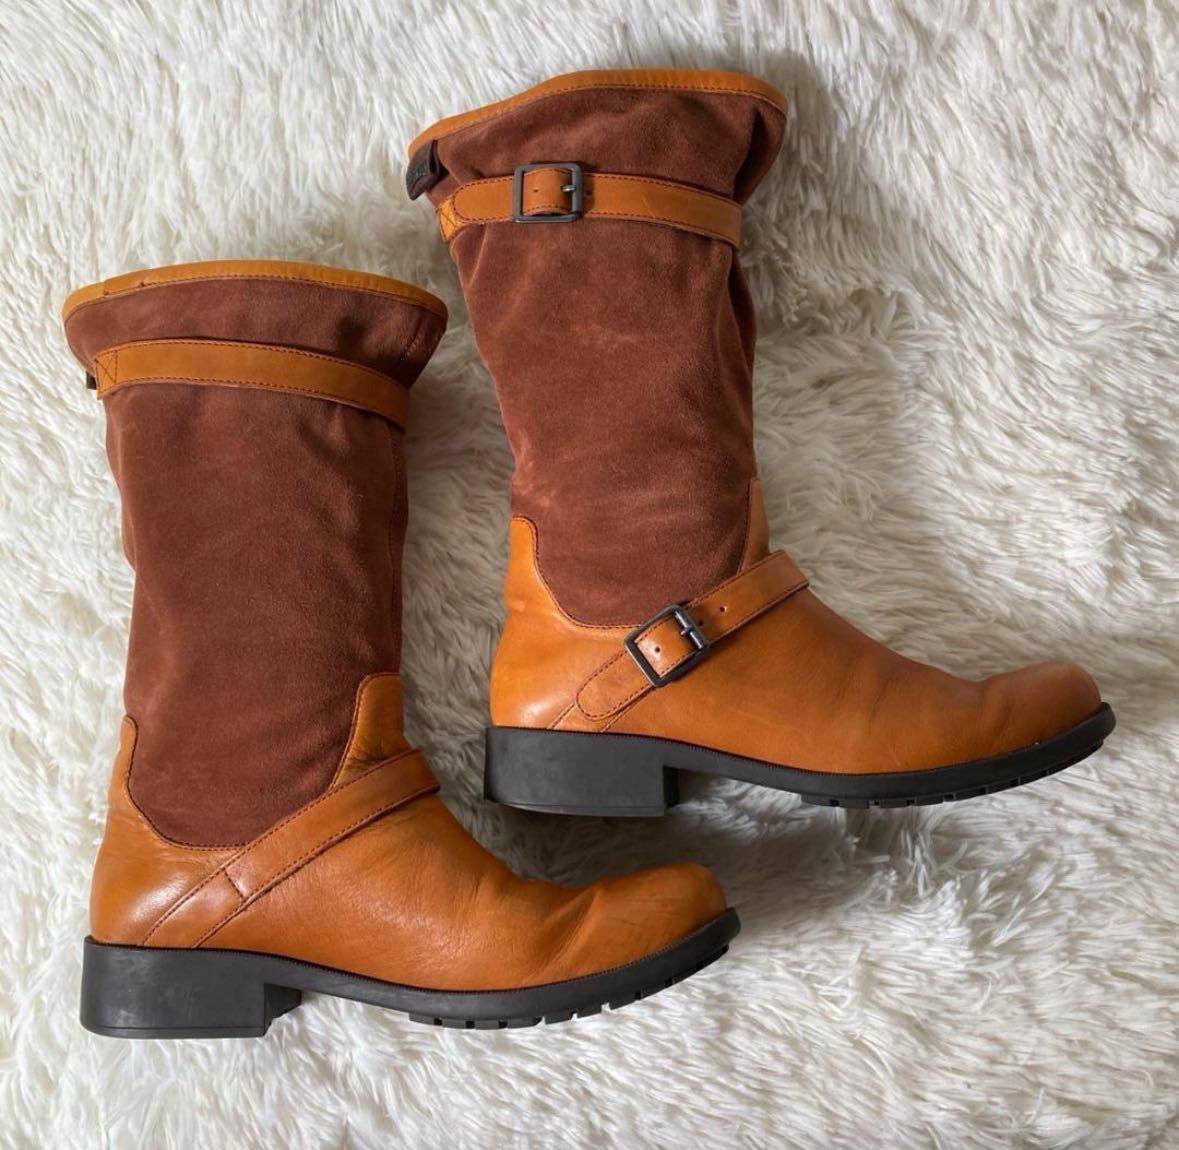 [ одежда ]CAMPER Camper замша кожа переключатель двойной ремень средний ботинки Camel 39 примерно 24.5. женский модный обувь 